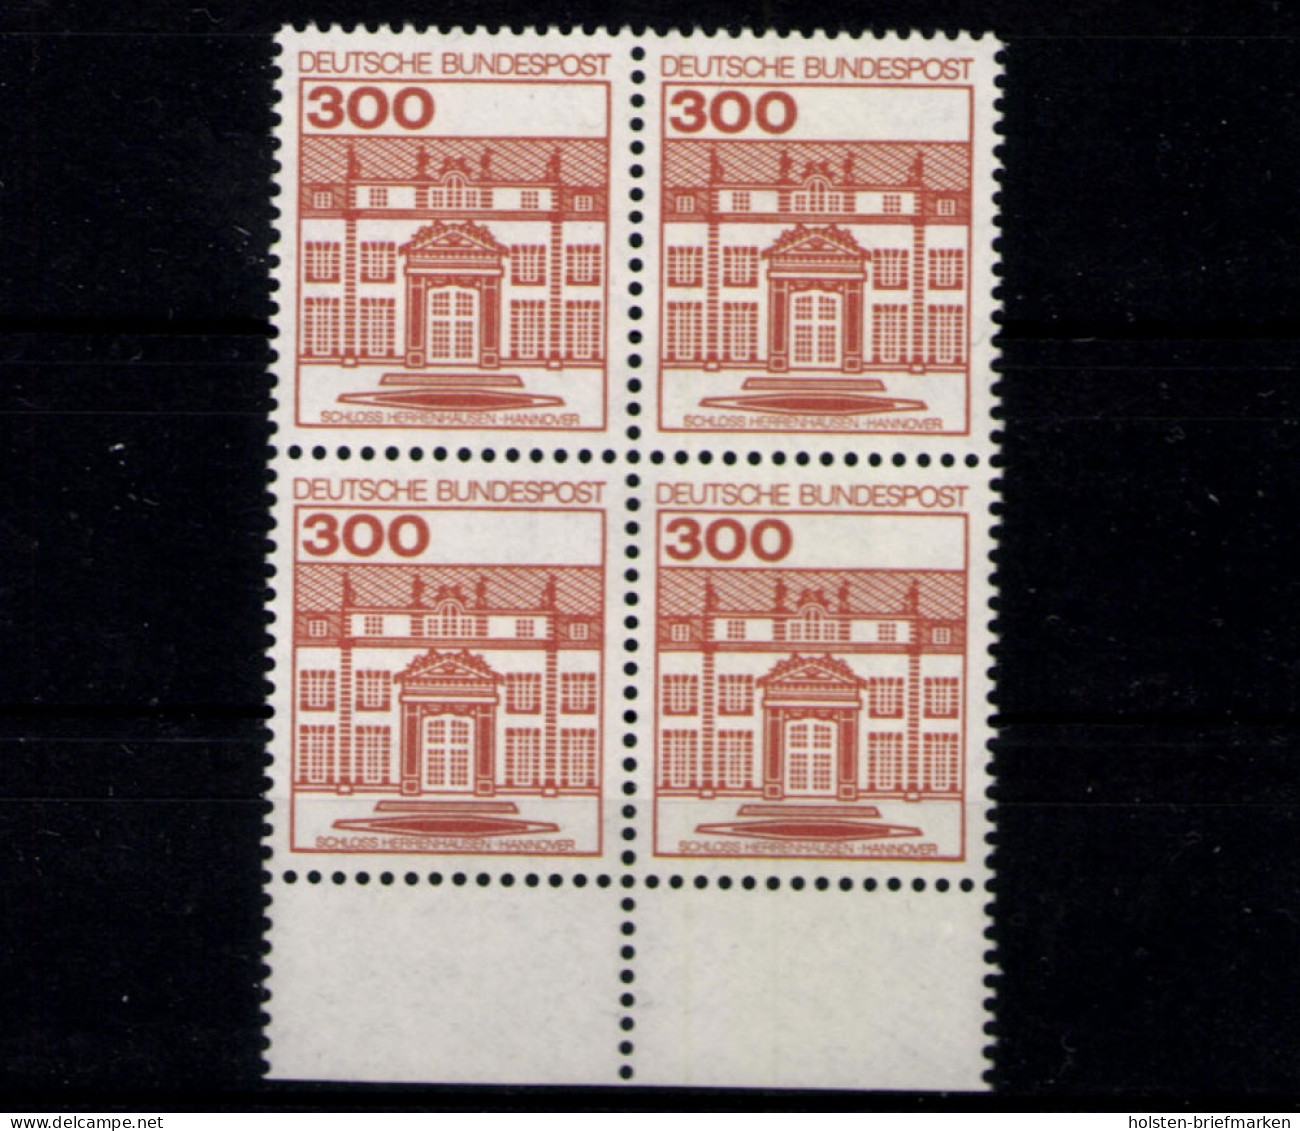 Deutschland (BRD), MiNr. 1143 A I, VB, Unterrand, Postfrisch - Unused Stamps